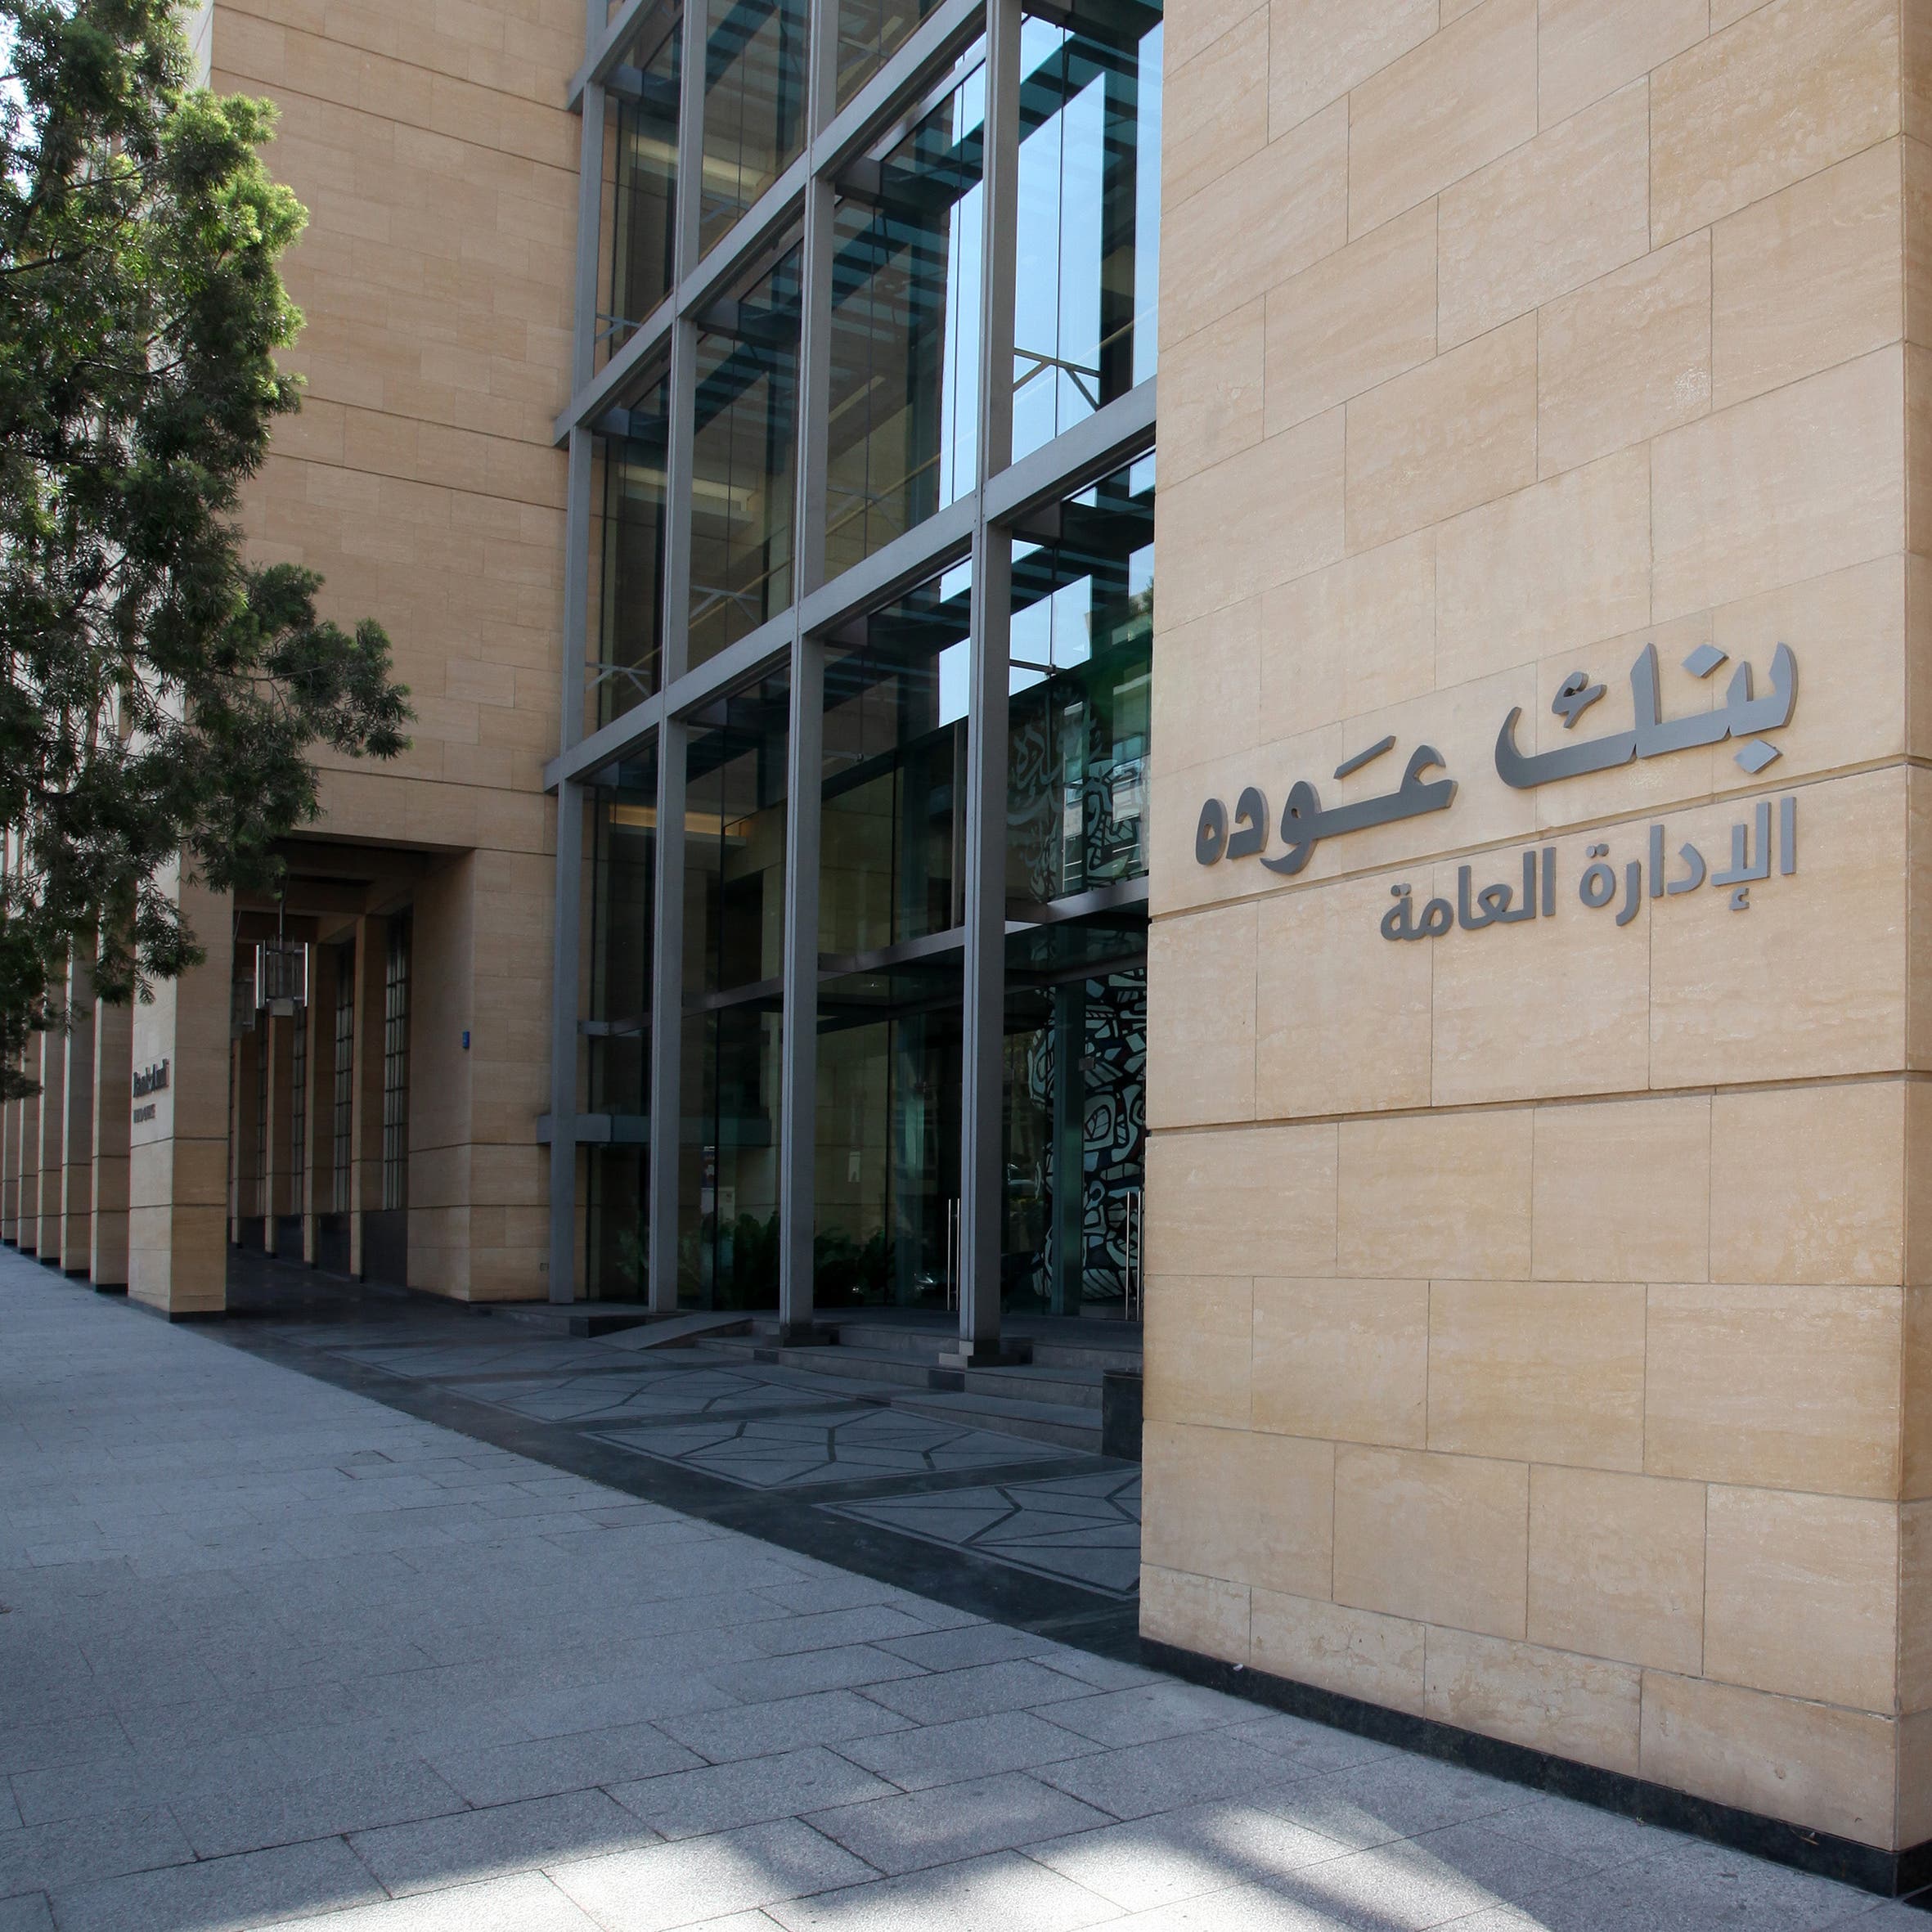 مصادر العربية: بنك عوده اللبناني يعمل على بيع عملياته في مصر